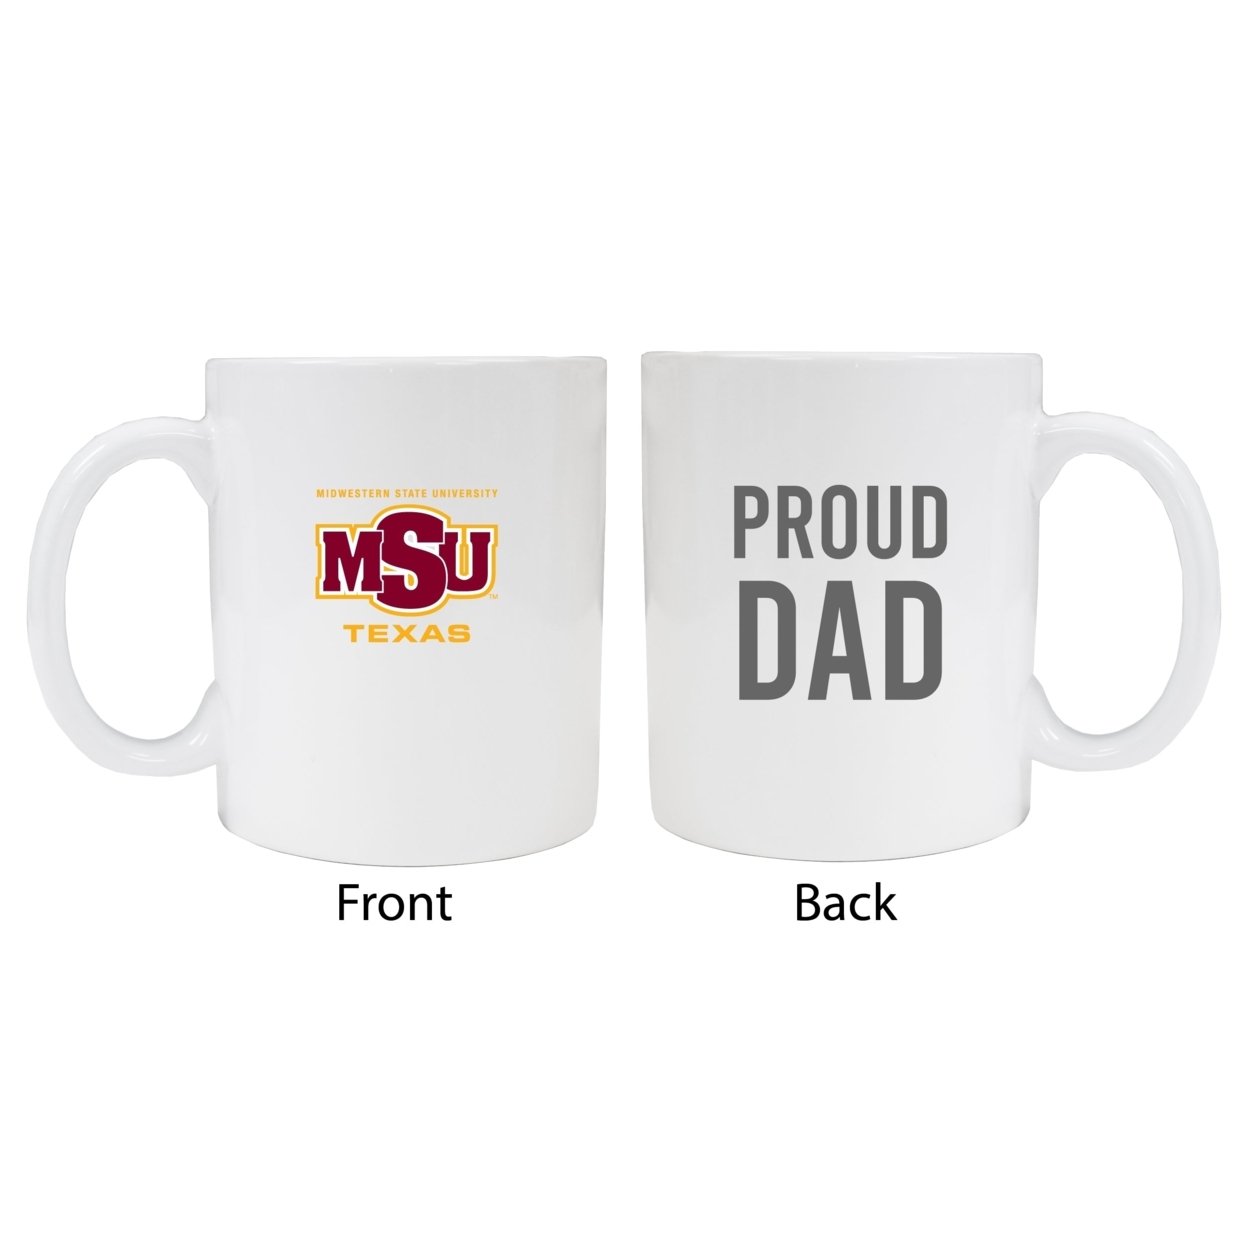 Midwestern State University Mustangs Proud Dad Ceramic Coffee Mug - White